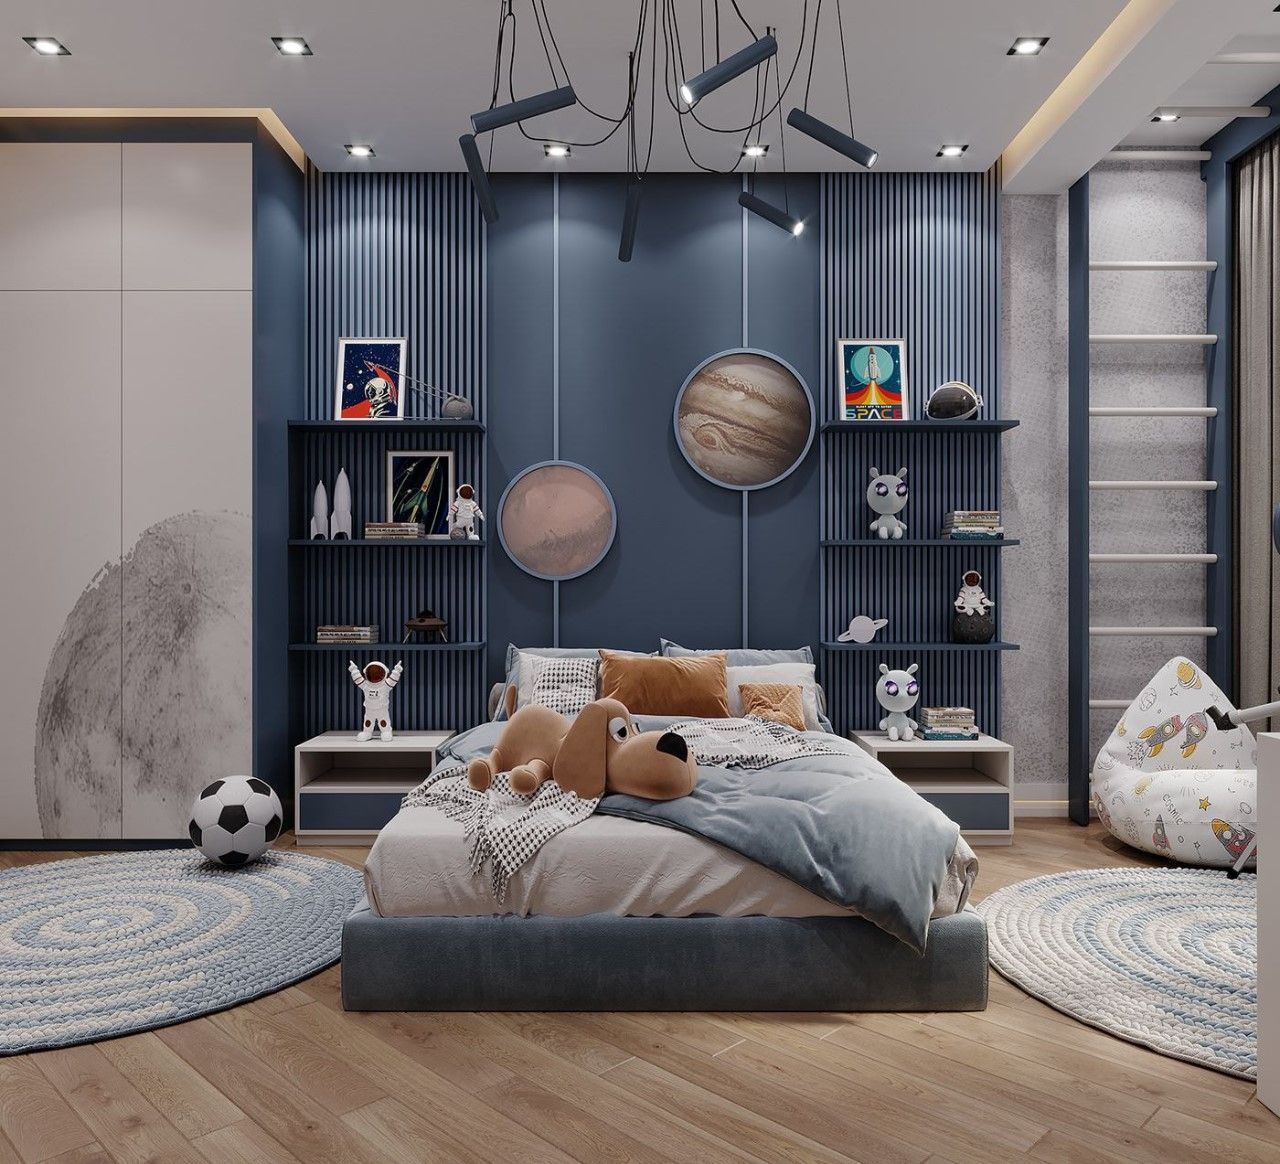 Mẫu thiết kế phòng ngủ màu xanh lam cho bé độc đáo